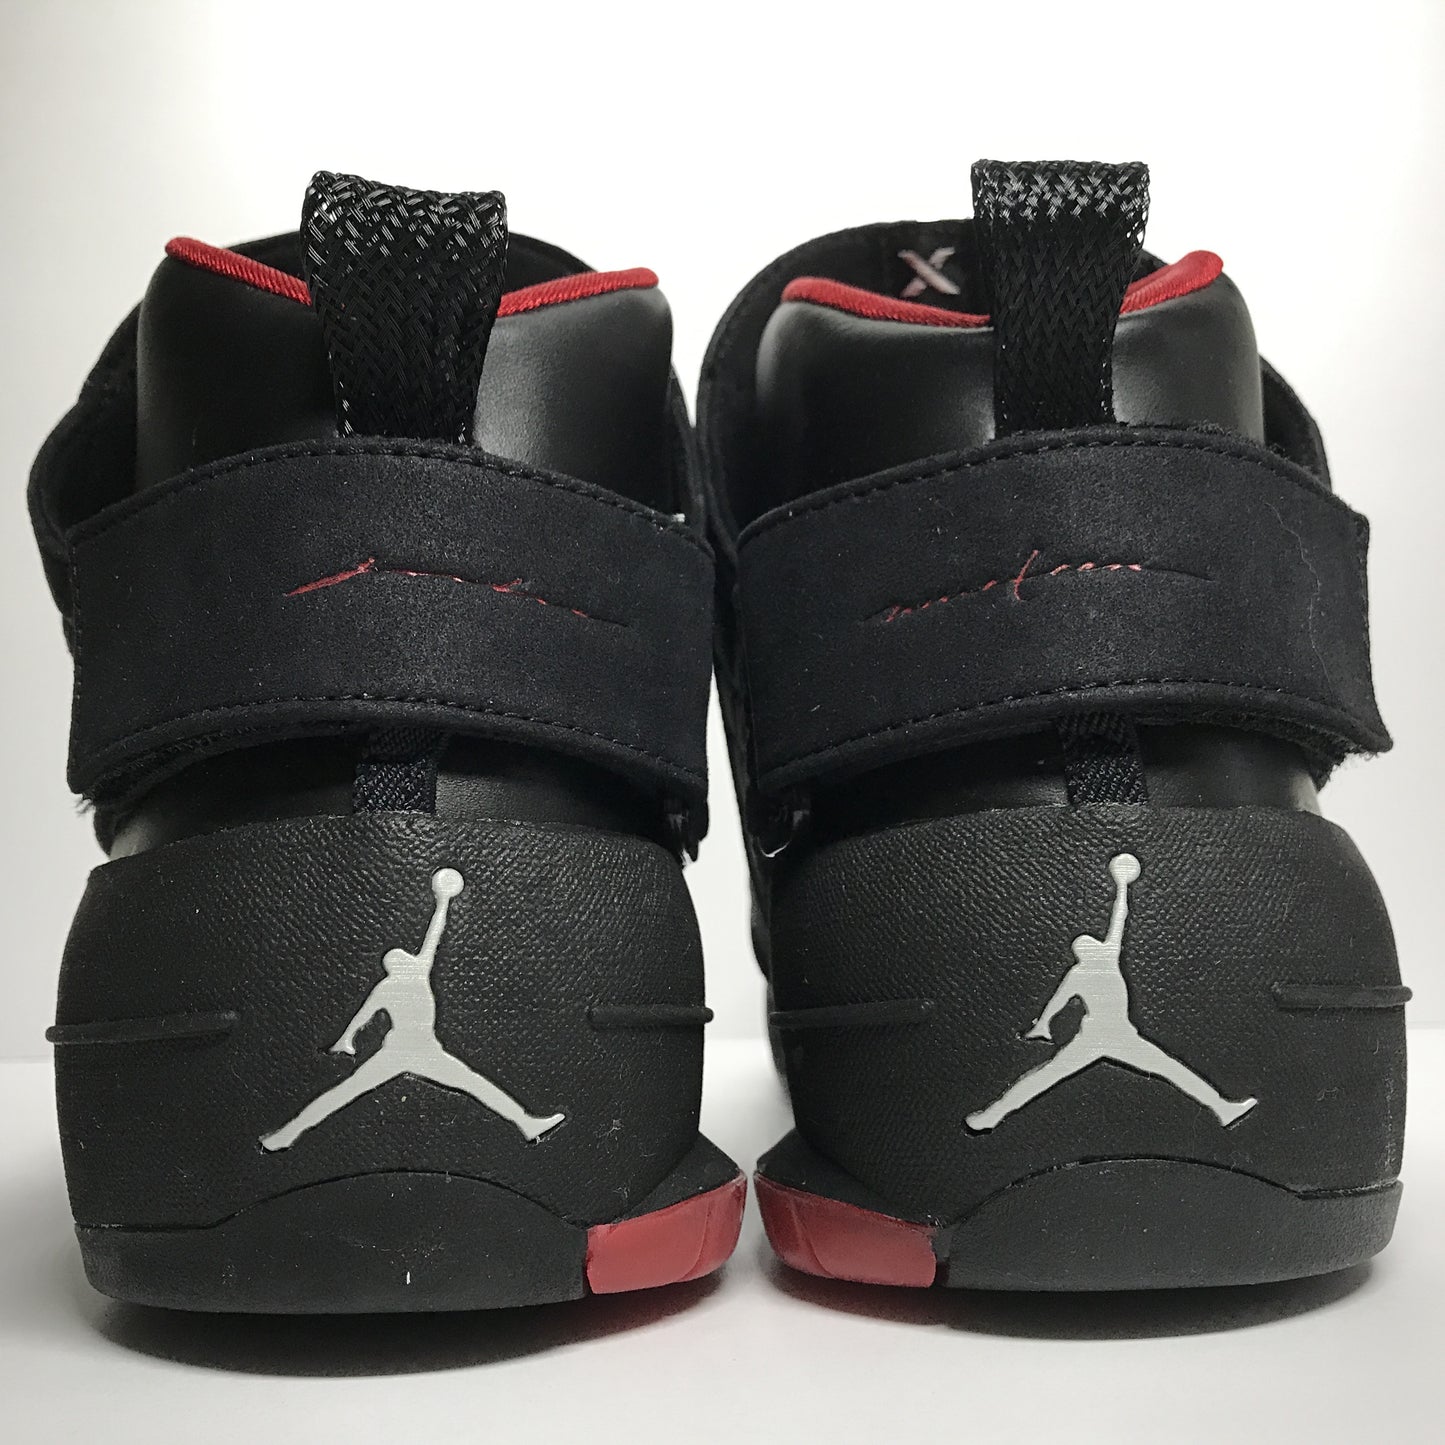 DS Nike Air Jordan 19 XIX CDP Negro/Rojo Talla 9